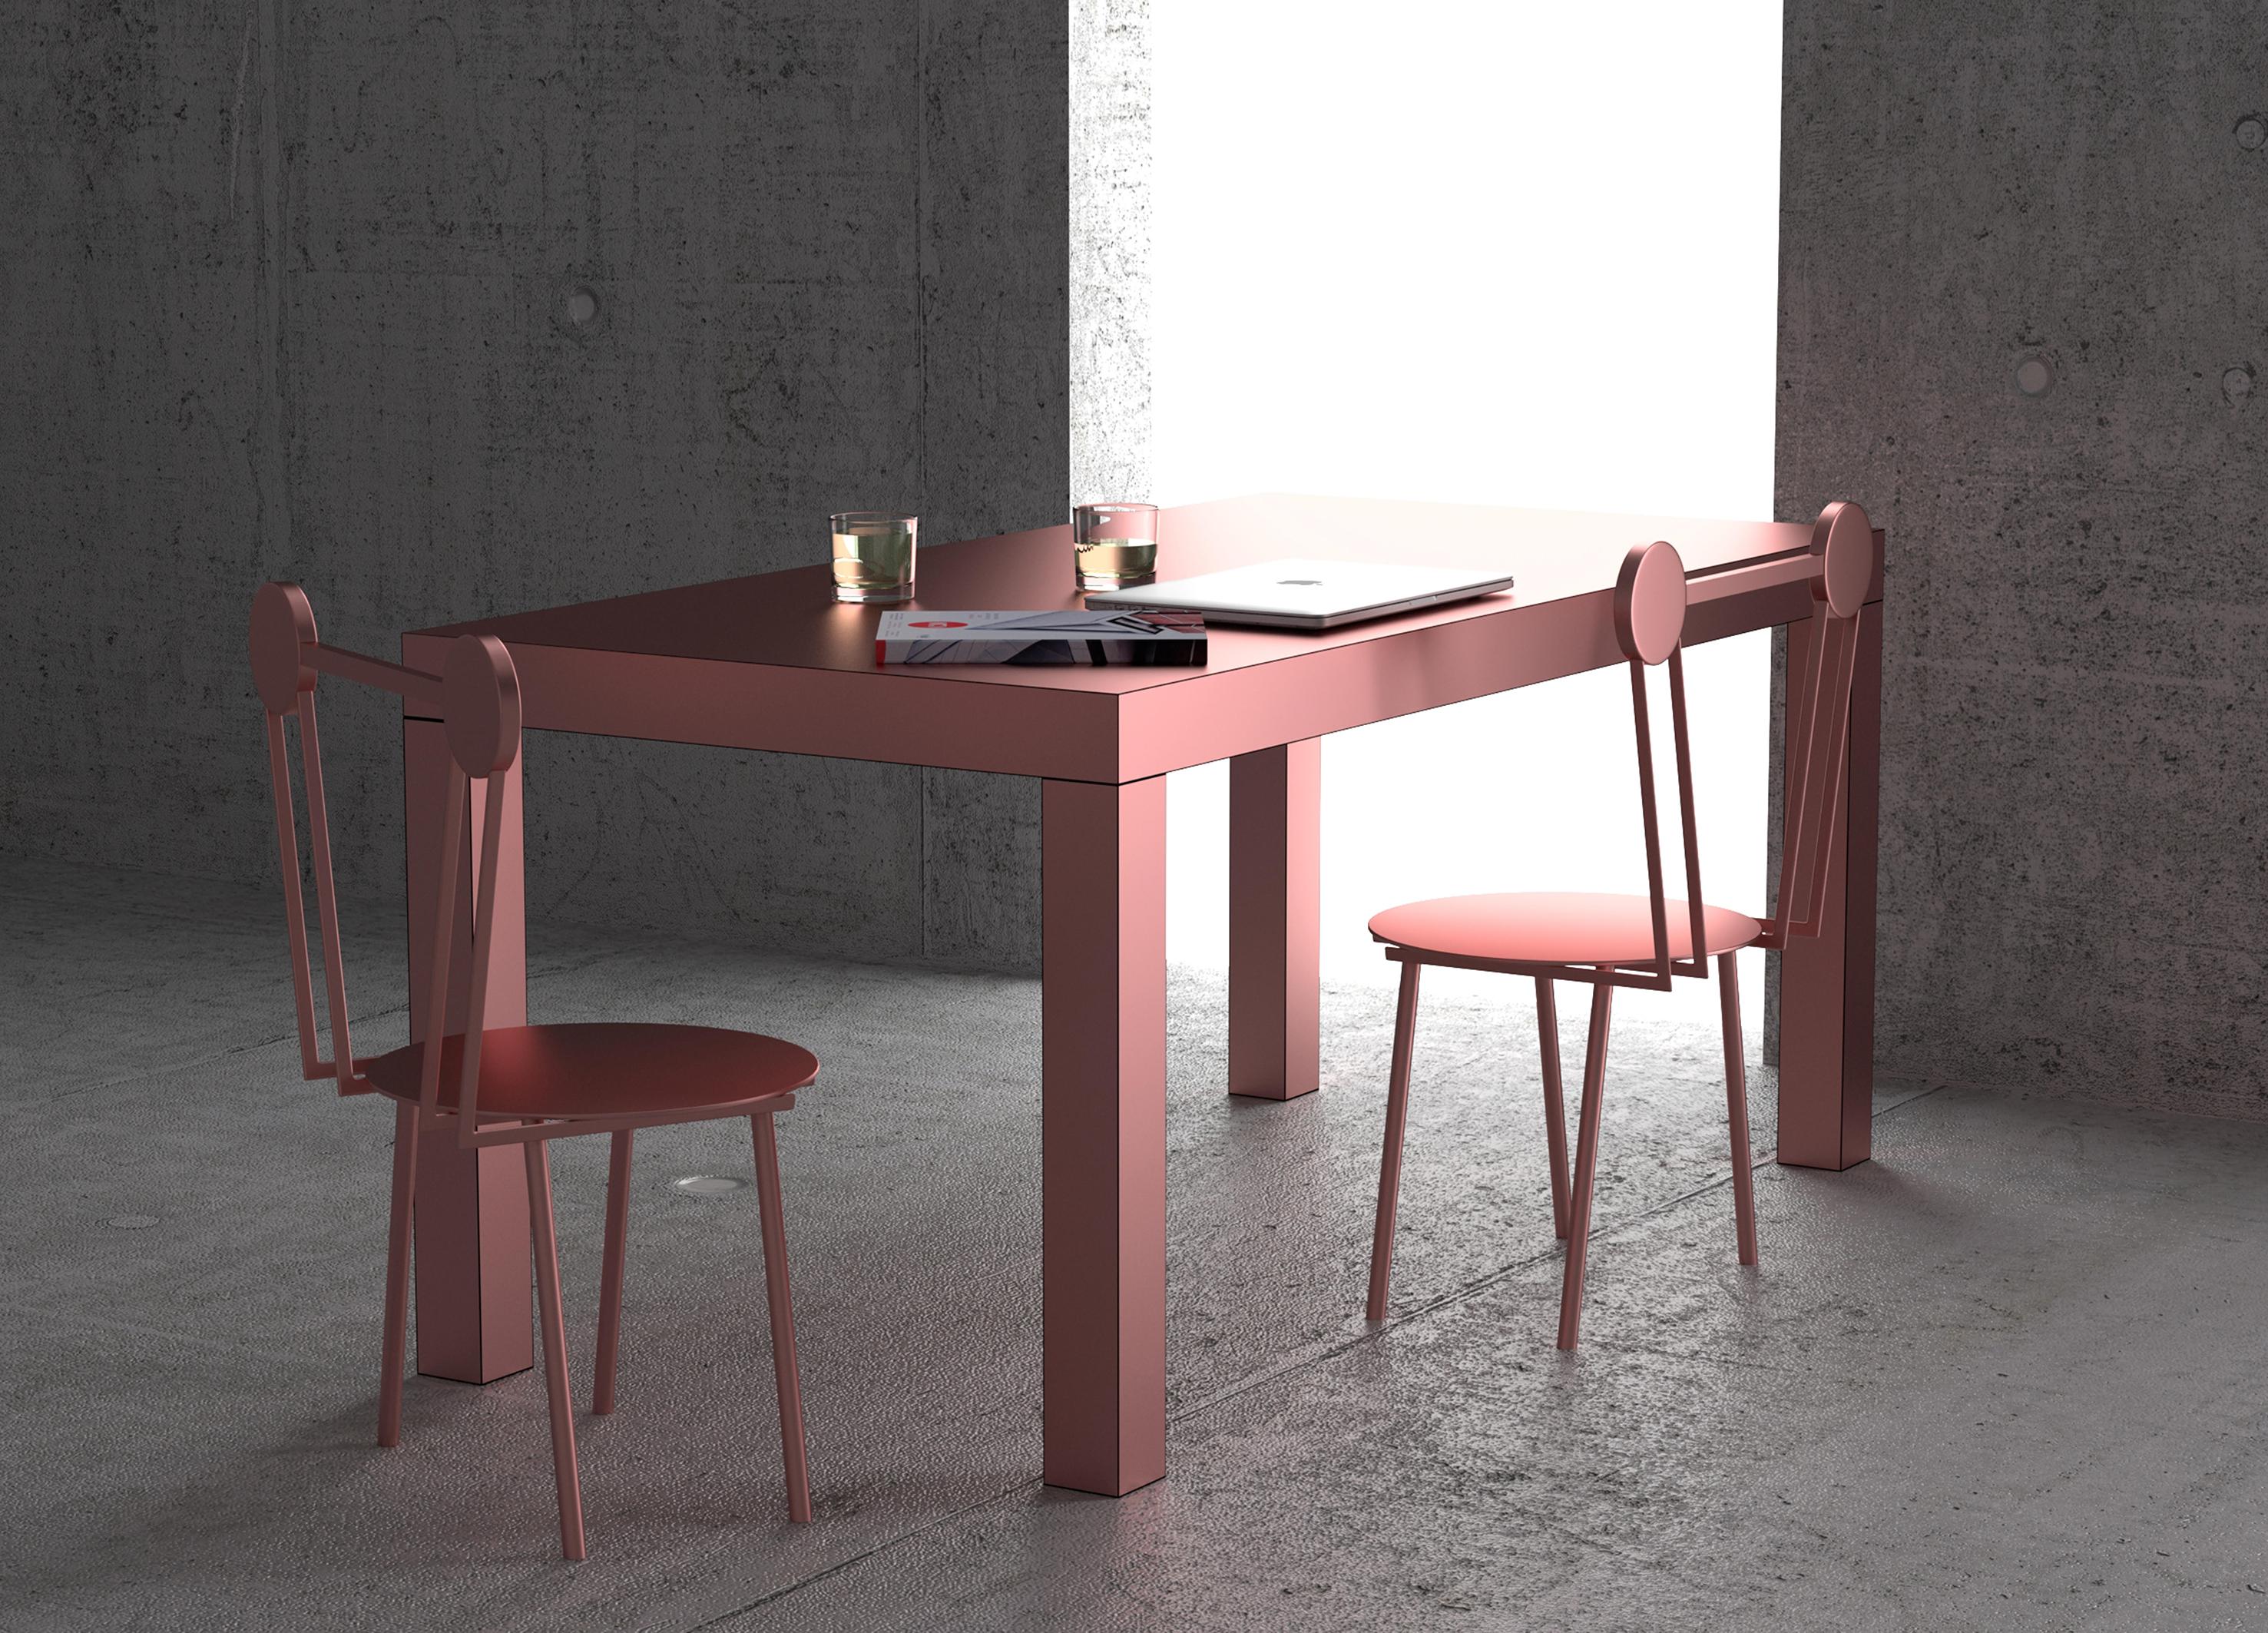 Hitan ist ein multifunktionaler Tisch, der vollständig mit HPL-Laminaten aus Metall verkleidet ist.

Seine minimalistische Struktur besteht aus einer rechteckigen Platte, die von vier Beinen mit quadratischem Querschnitt getragen wird.
Das